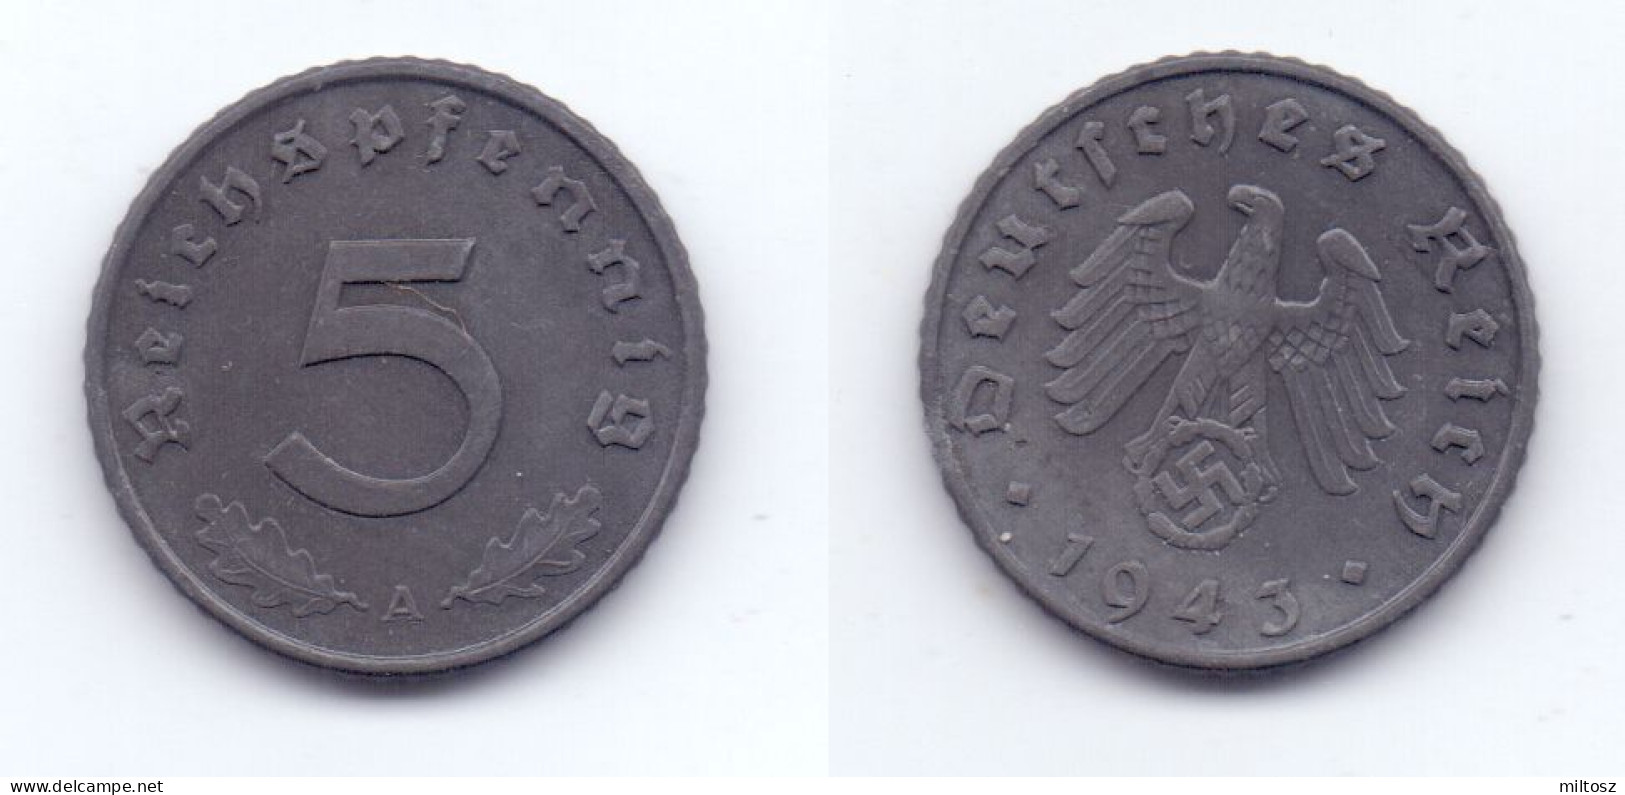 Germany 5 Reichspfennig 1943 A WWII Issue - 5 Reichspfennig